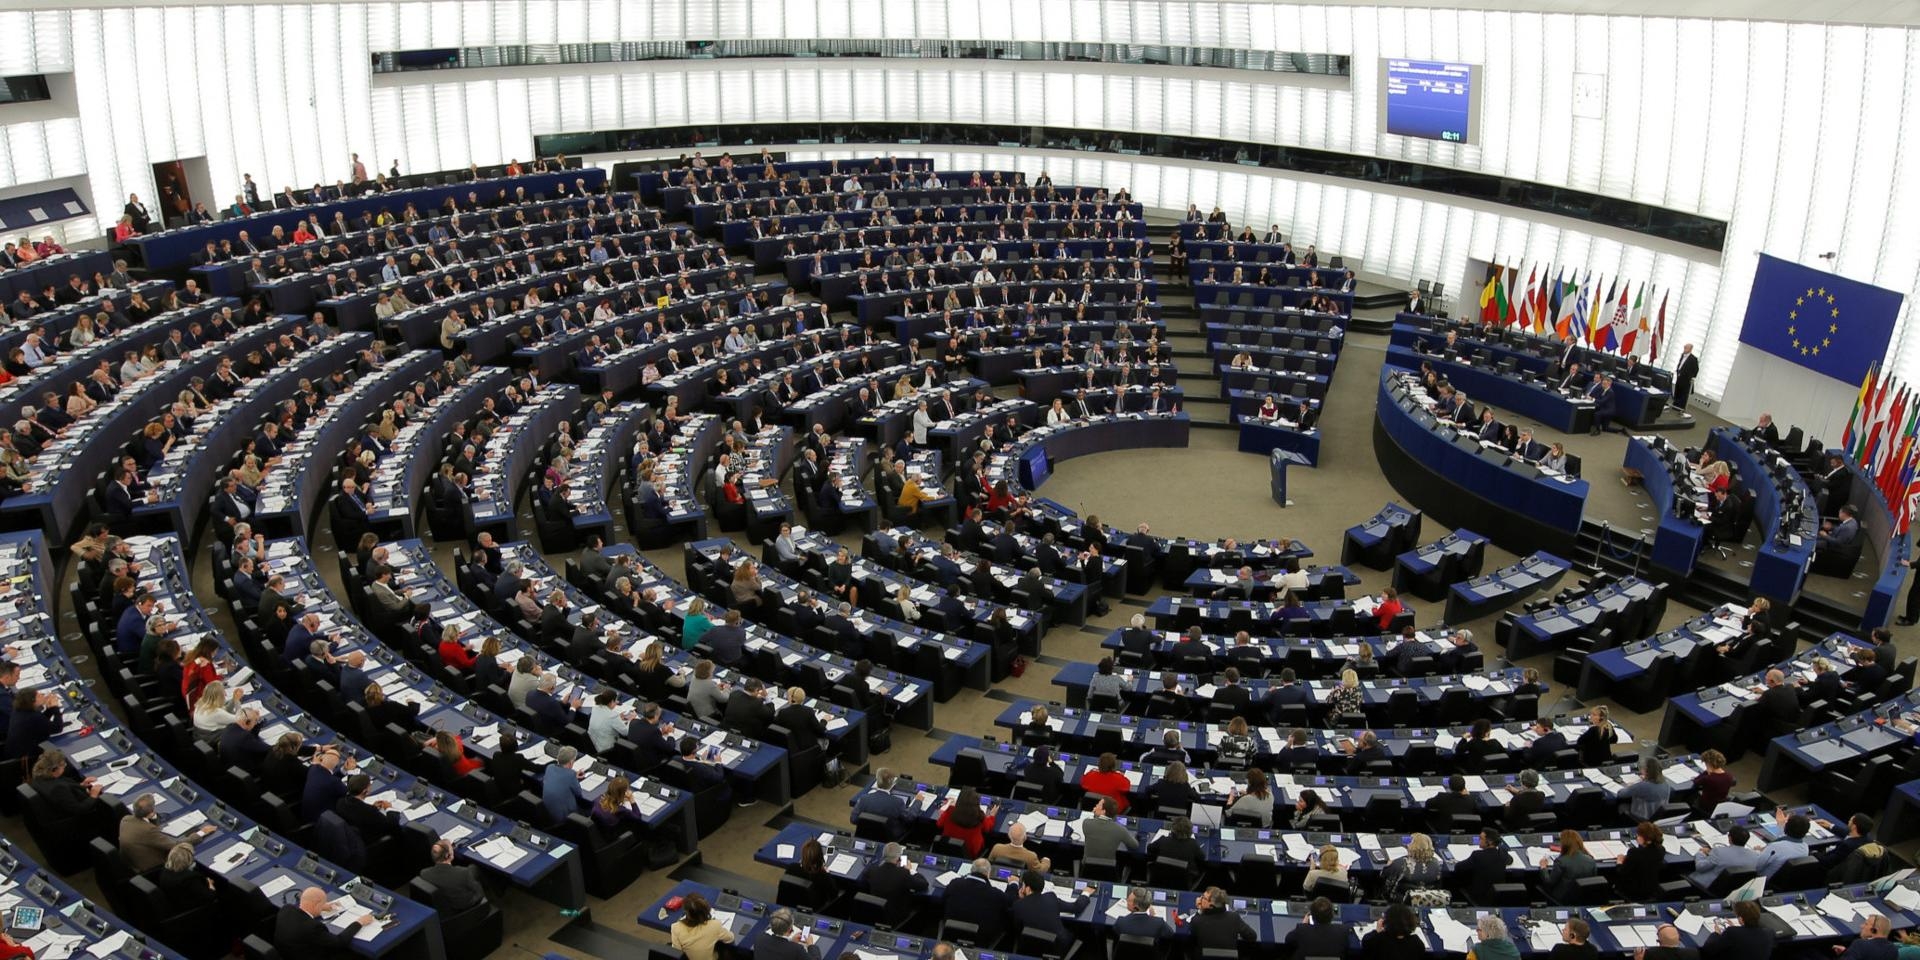 Европарламент потребовал от России исключить "обеление преступлений советского режима"